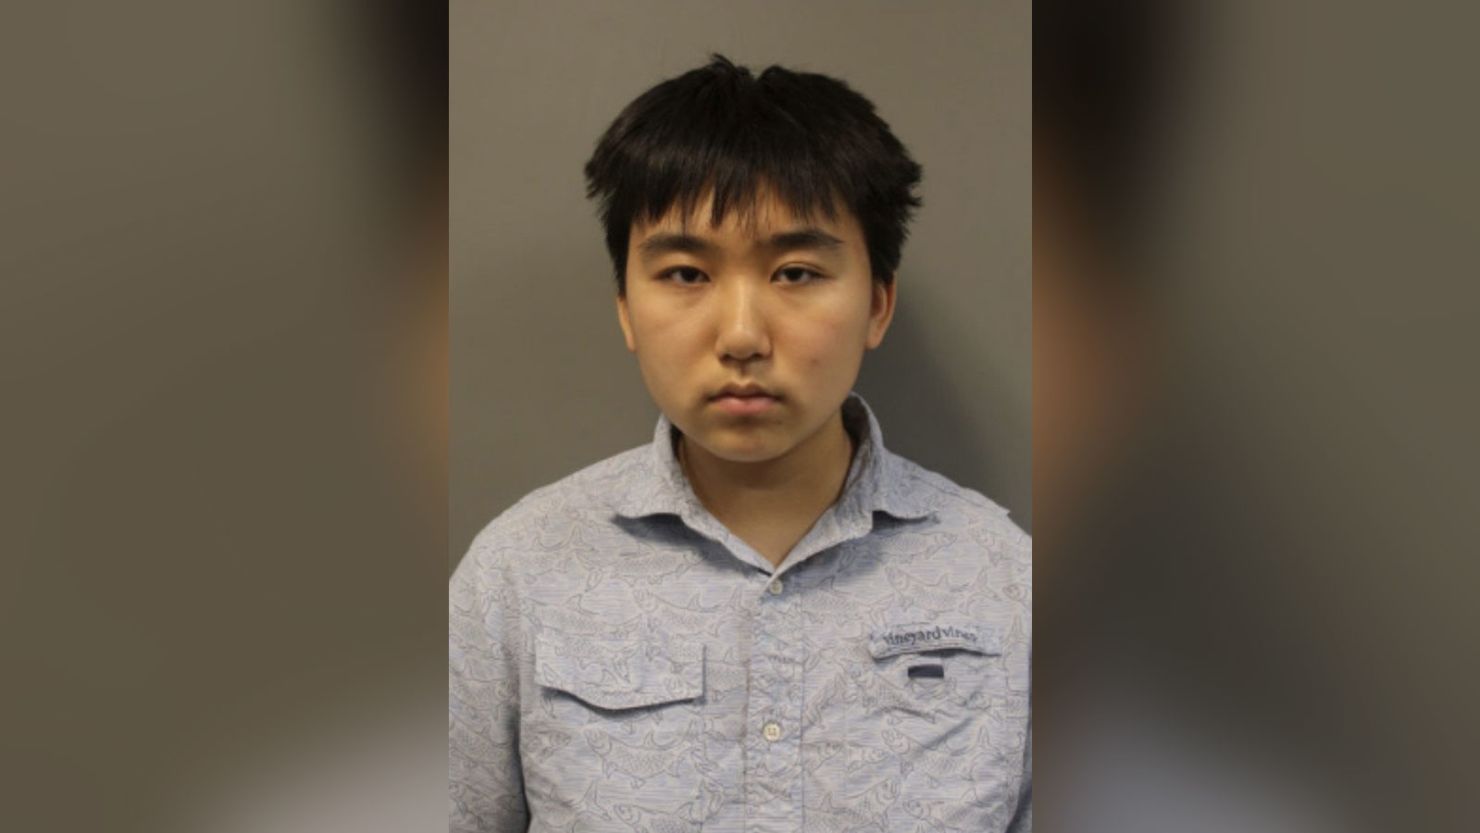 18岁的马里兰州高中生亚历克斯·叶（Alex Ye）周三被捕，并被指控犯有大规模暴力威胁罪，此前警方表示，他们发现了这名青少年计划实施校园枪击案的证据。